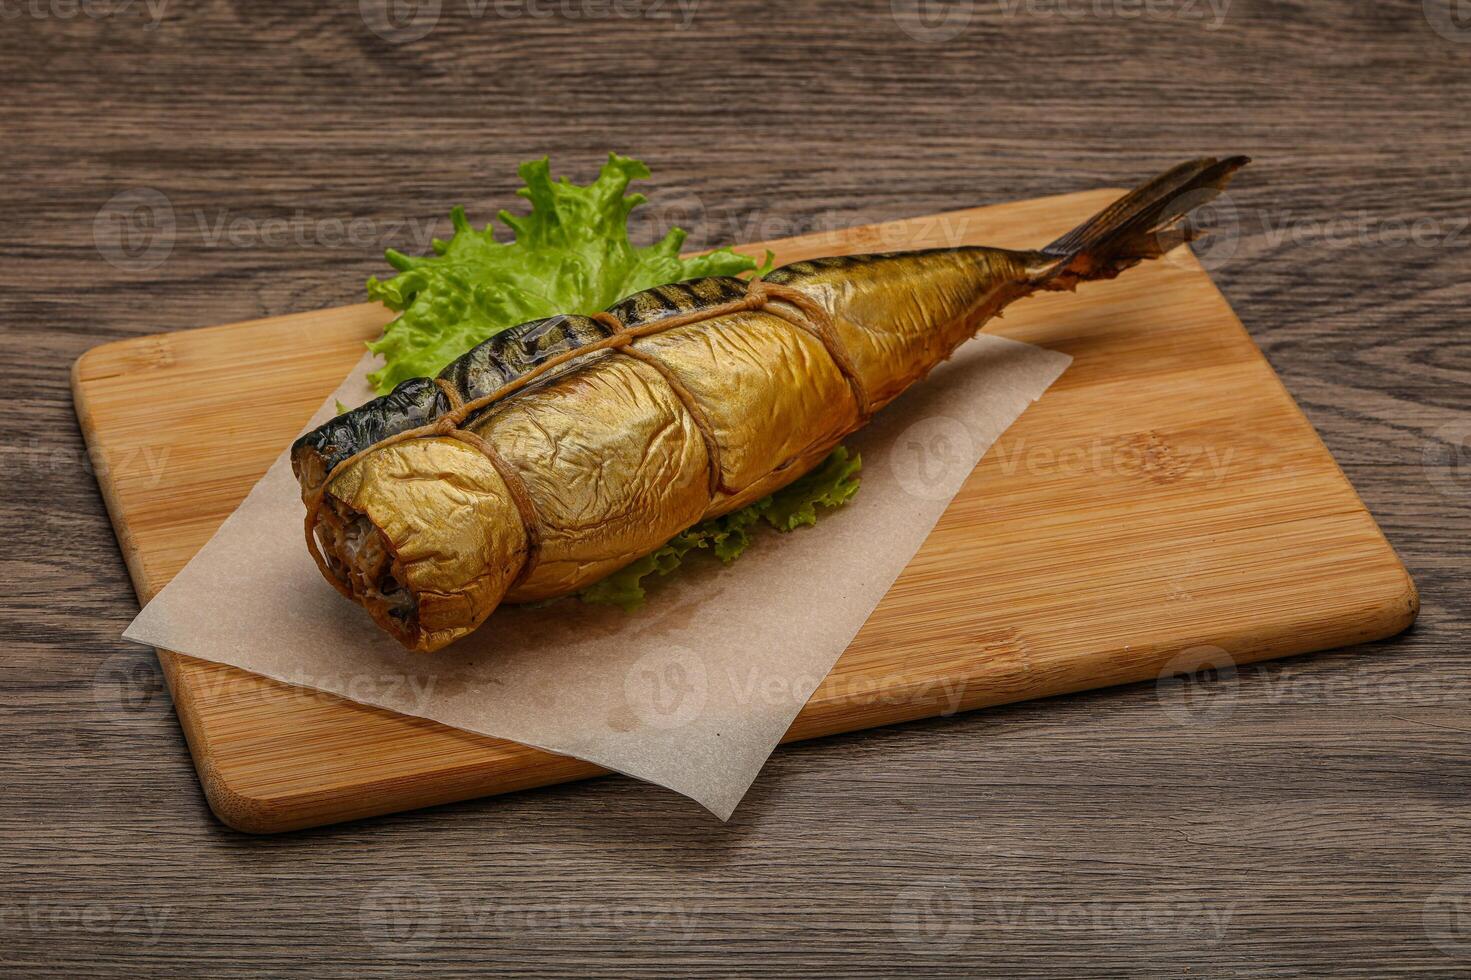 sabroso bocadillo de pescado caballa ahumado foto